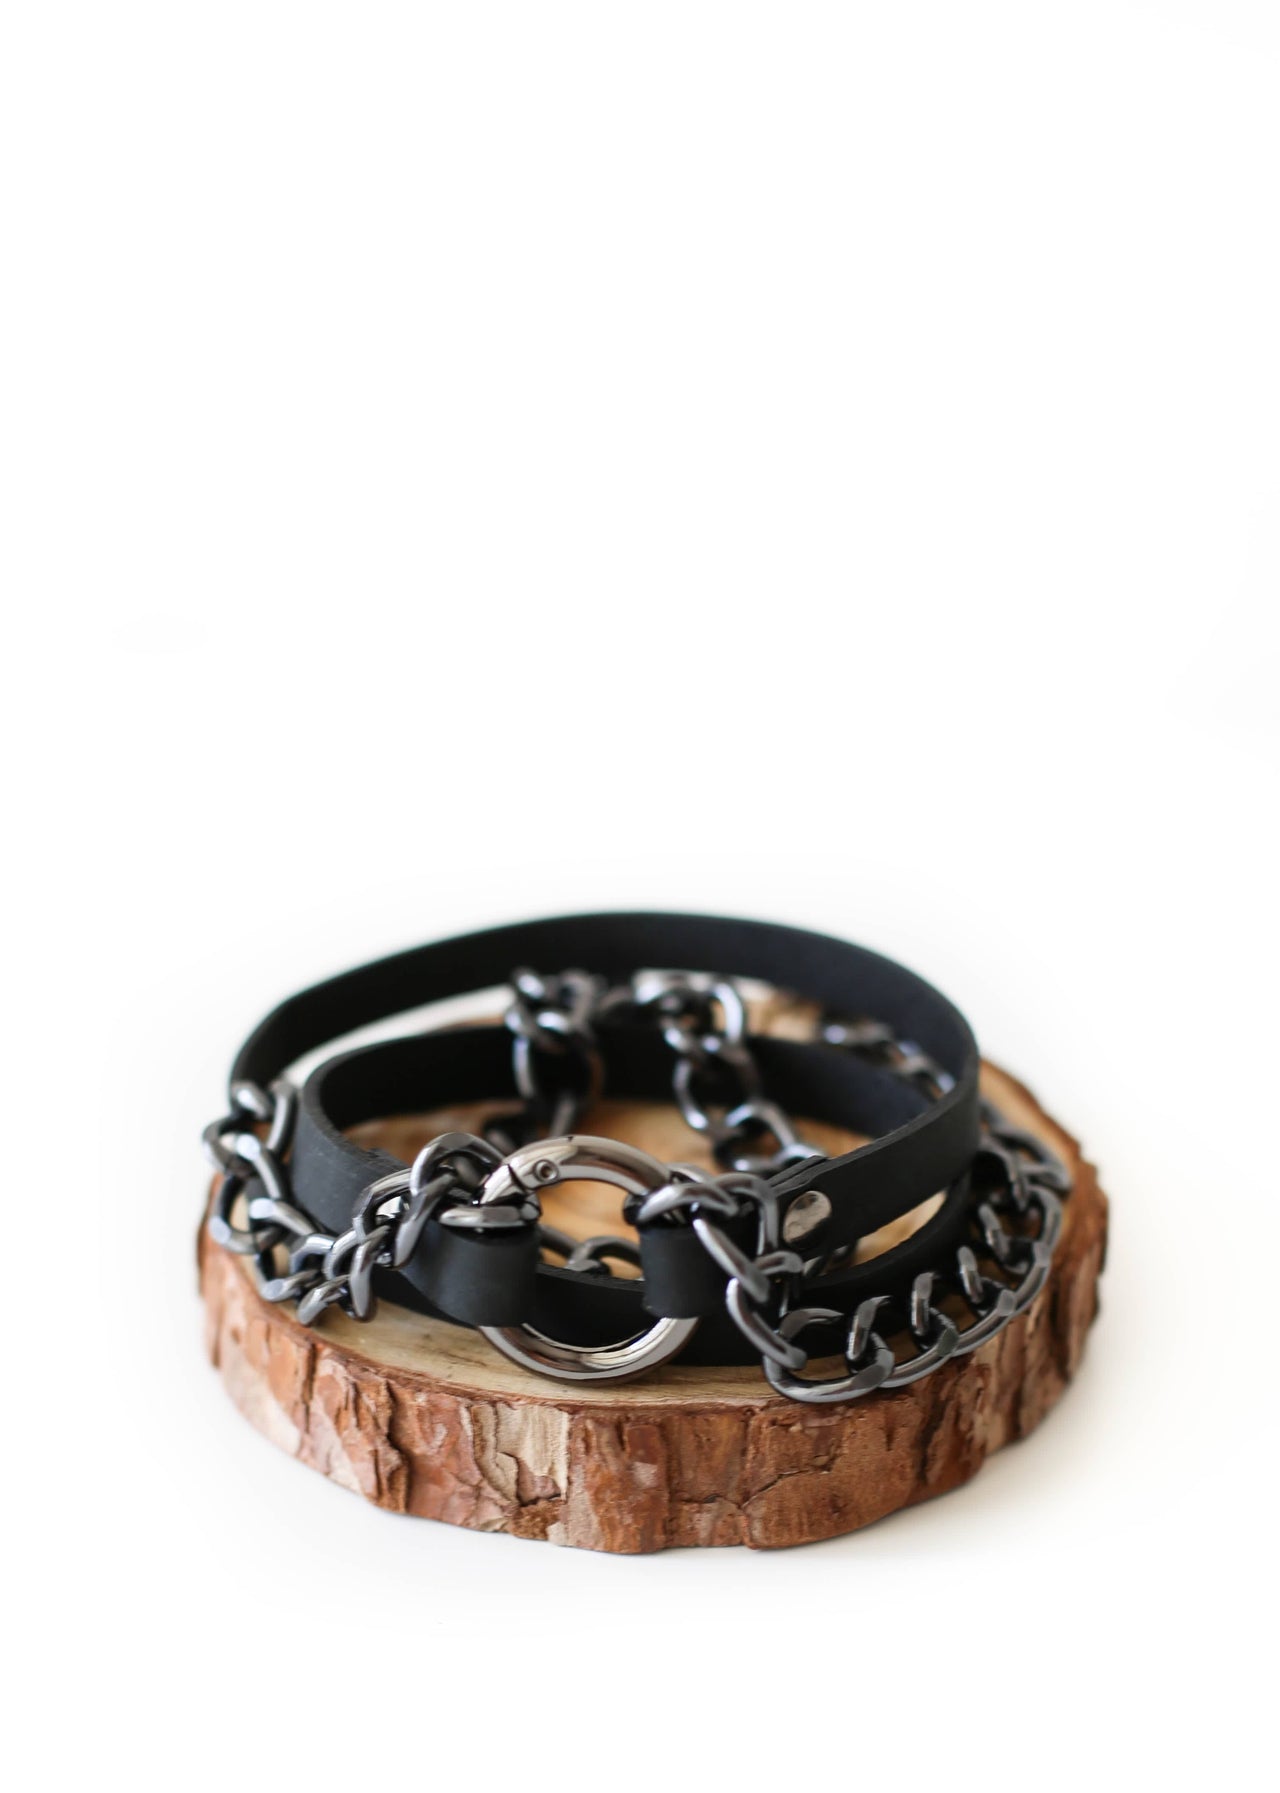 Leather Wrap Bracelet, Designer Bracelet